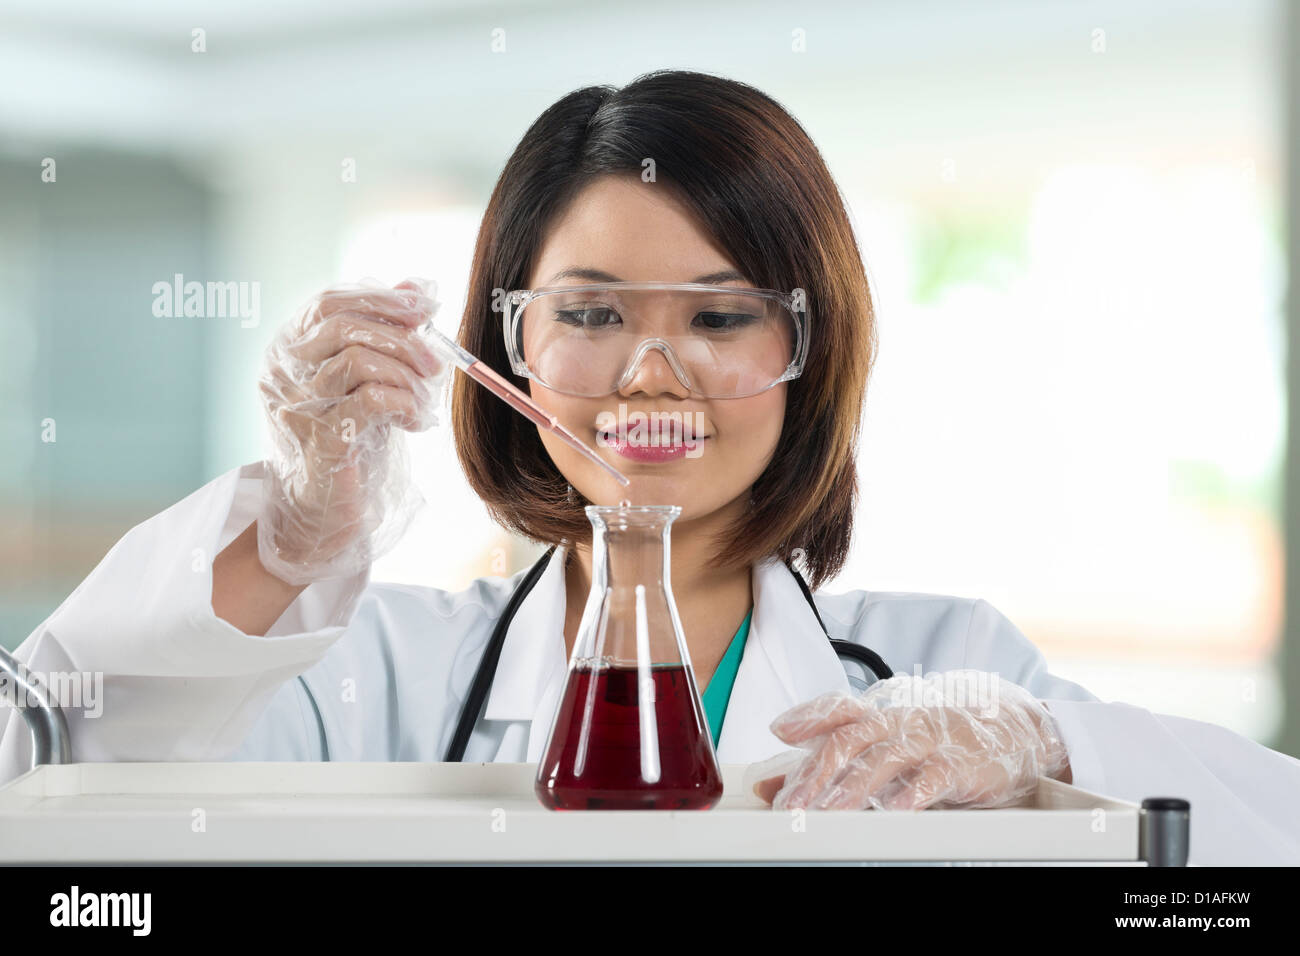 Un chercheur scientifique chinois tenant à une solution liquide dans un laboratoire. Femme scientifique de l'analyse d'une solution. Banque D'Images